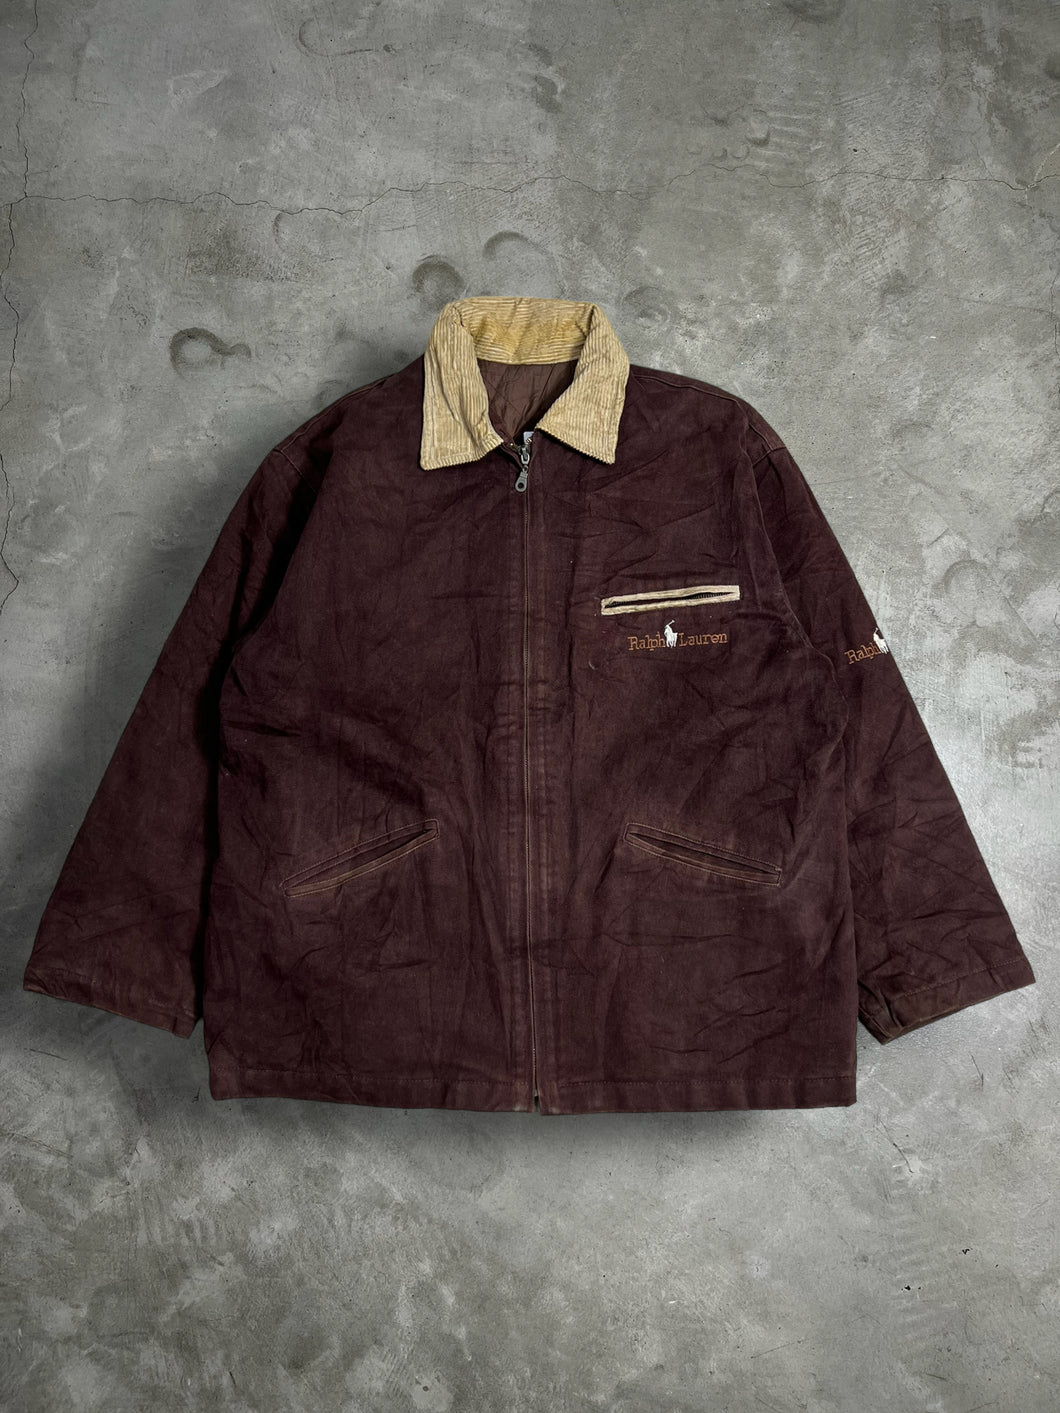 Vintage Bootleg Ralph Lauren Full Zip Jacket (S) JK327